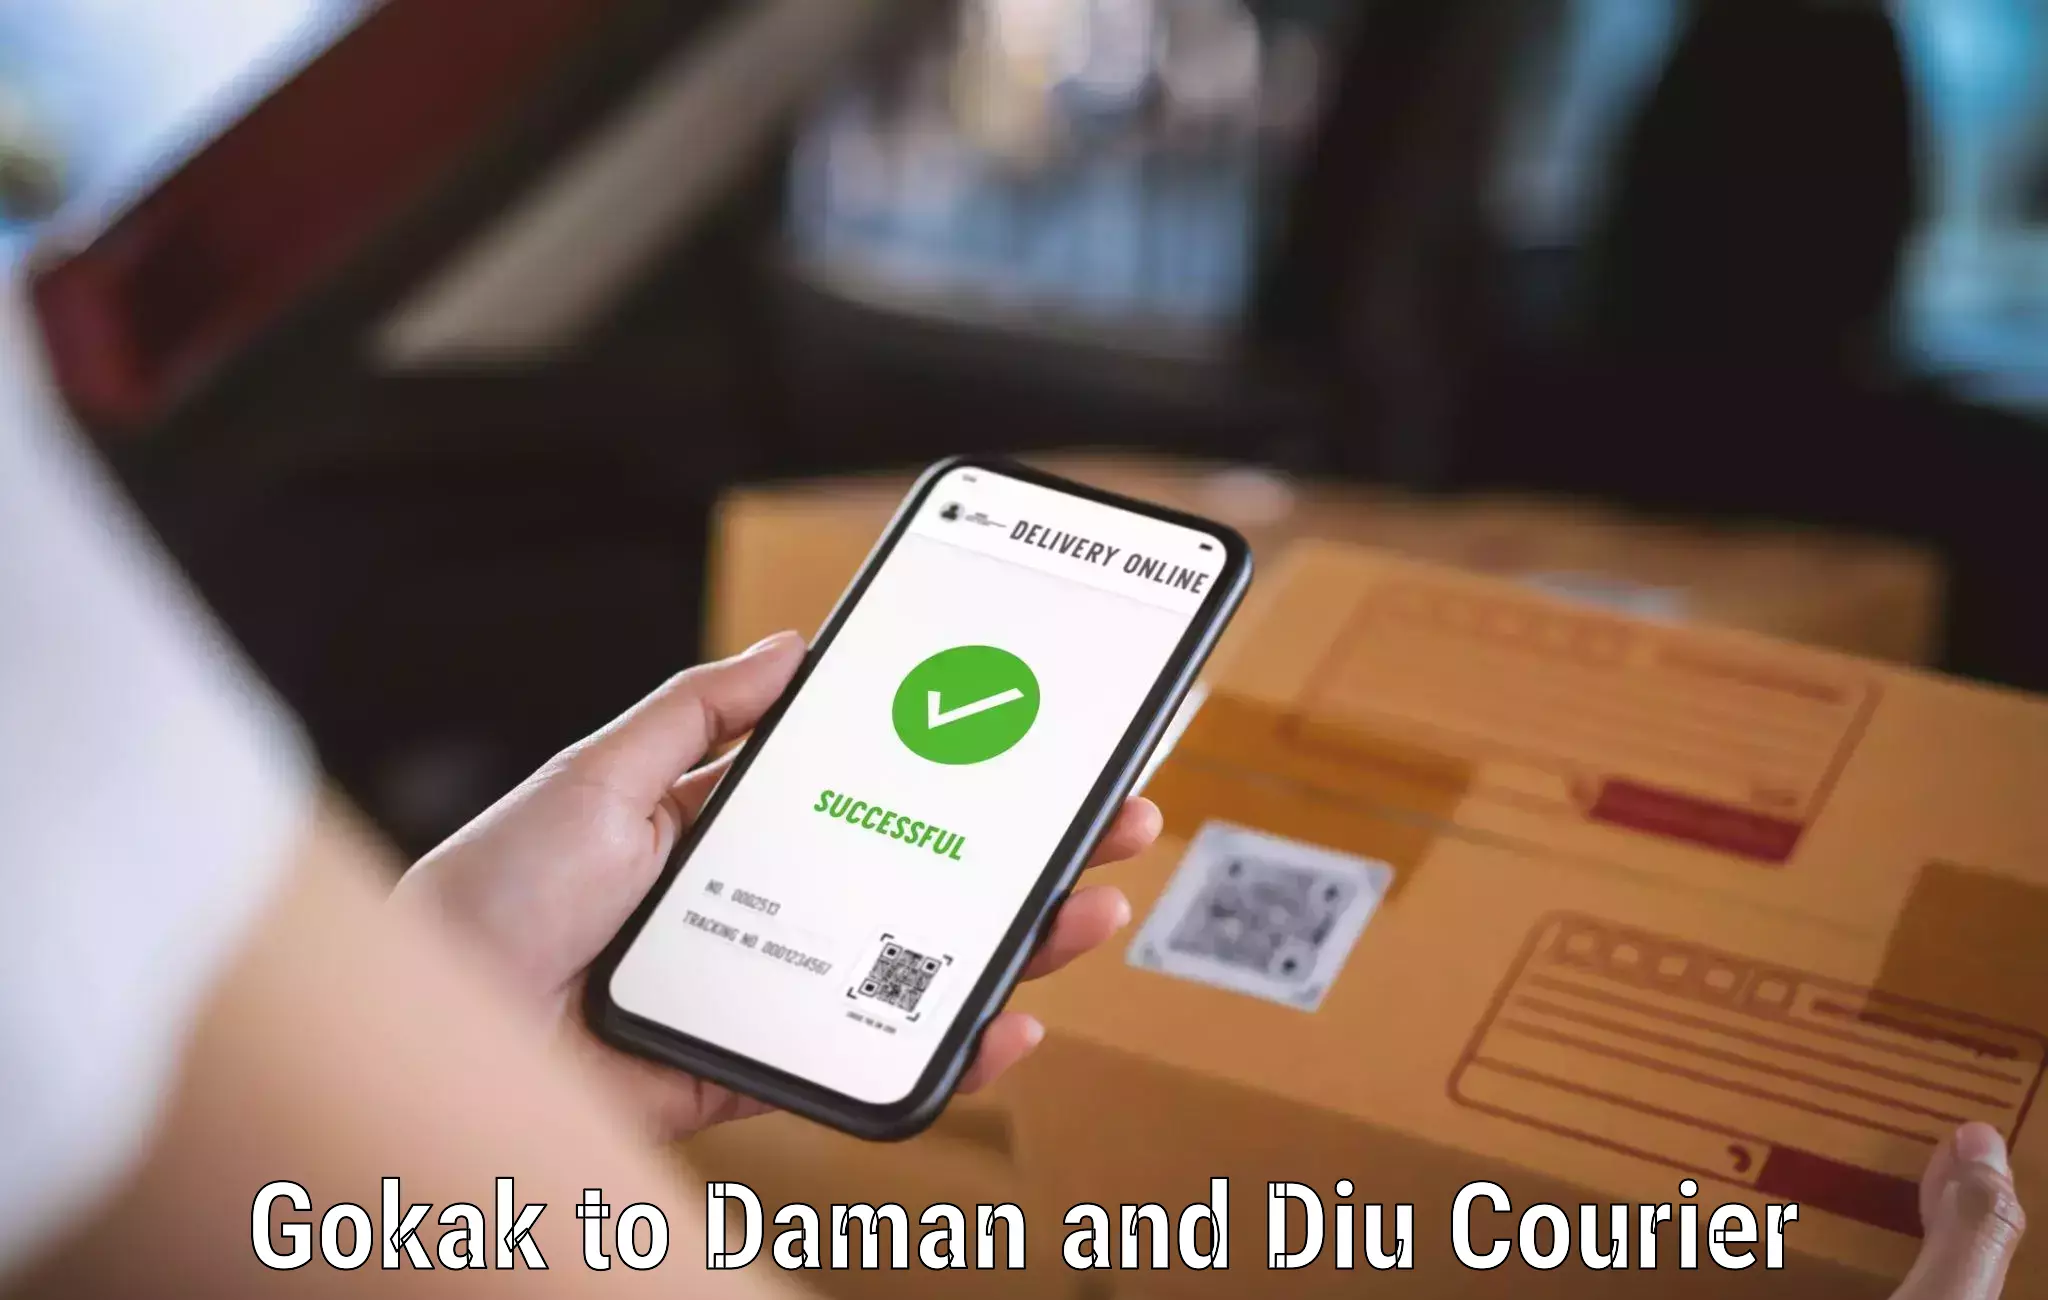 Versatile courier options Gokak to Daman and Diu